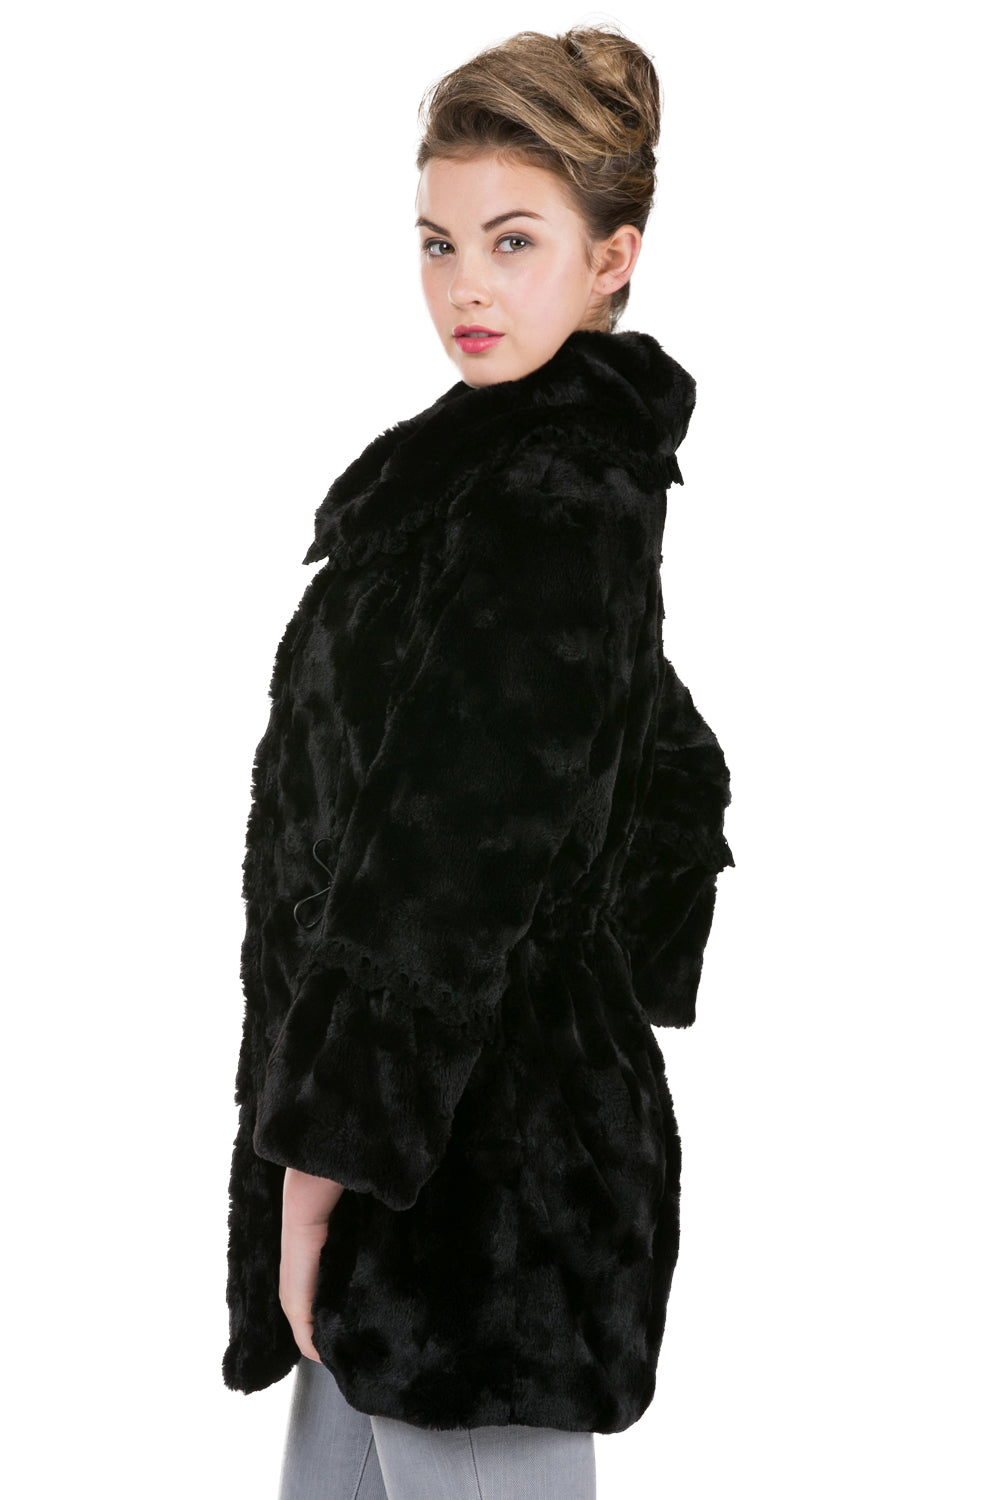 Women's Faux Fur Jacket Coat with Lace Trim - Shop Lev